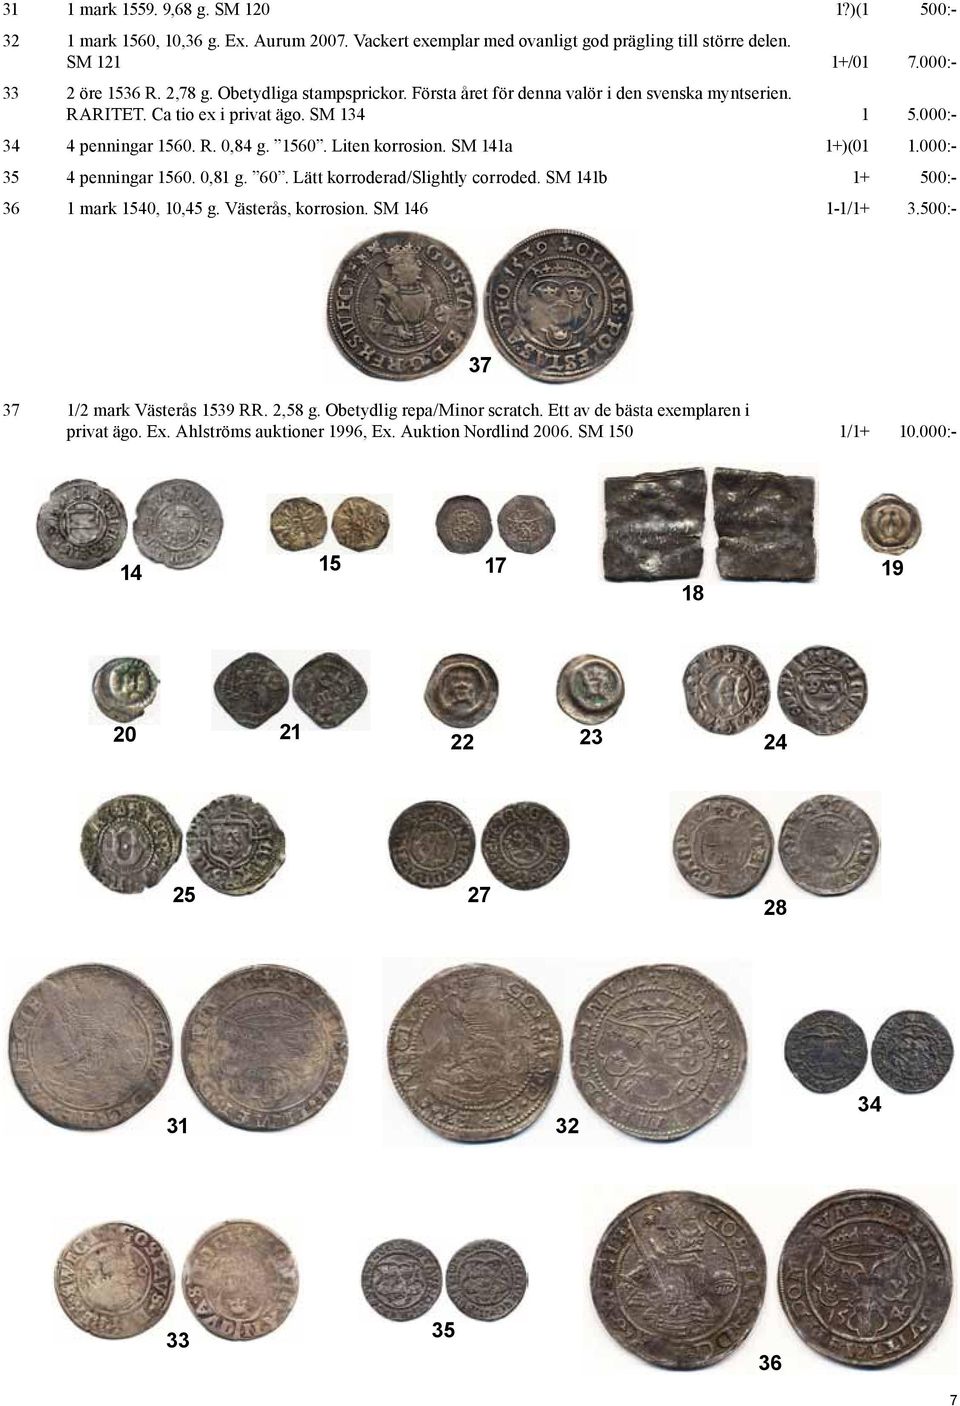 SM 141a 1+)(01 1.000:- 35 4 penningar 1560. 0,81 g. 60. Lätt korroderad/slightly corroded. SM 141b 1+ 500:- 36 1 mark 1540, 10,45 g. Västerås, korrosion. SM 146 1-1/1+ 3.